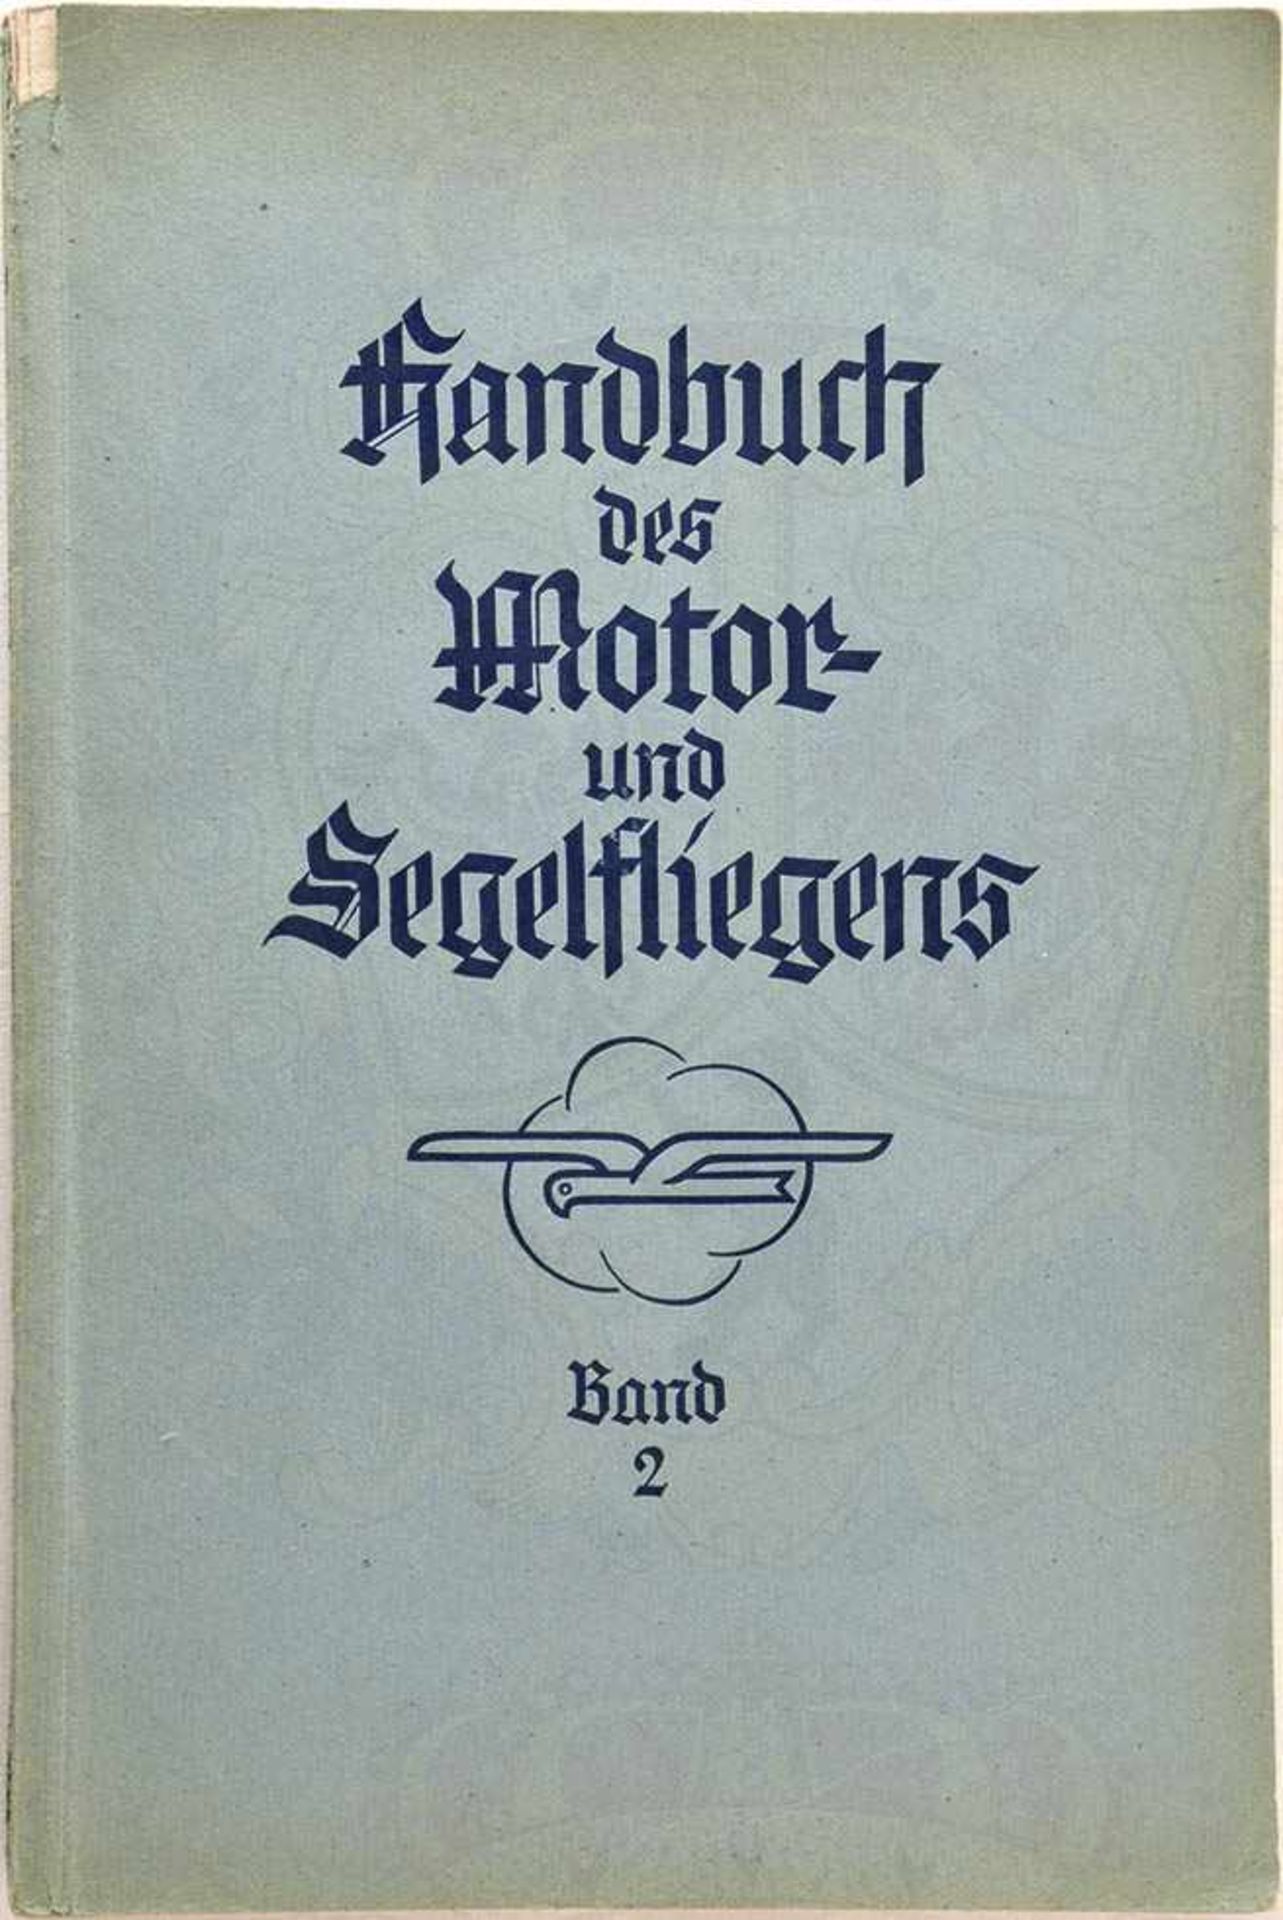 HANDBUCH DES MOTOR- UND SEGELFLIEGENS, C. Vogelsang, Bd. 2 von ?, Potsdam um 1935, zahlr. Fotos u.